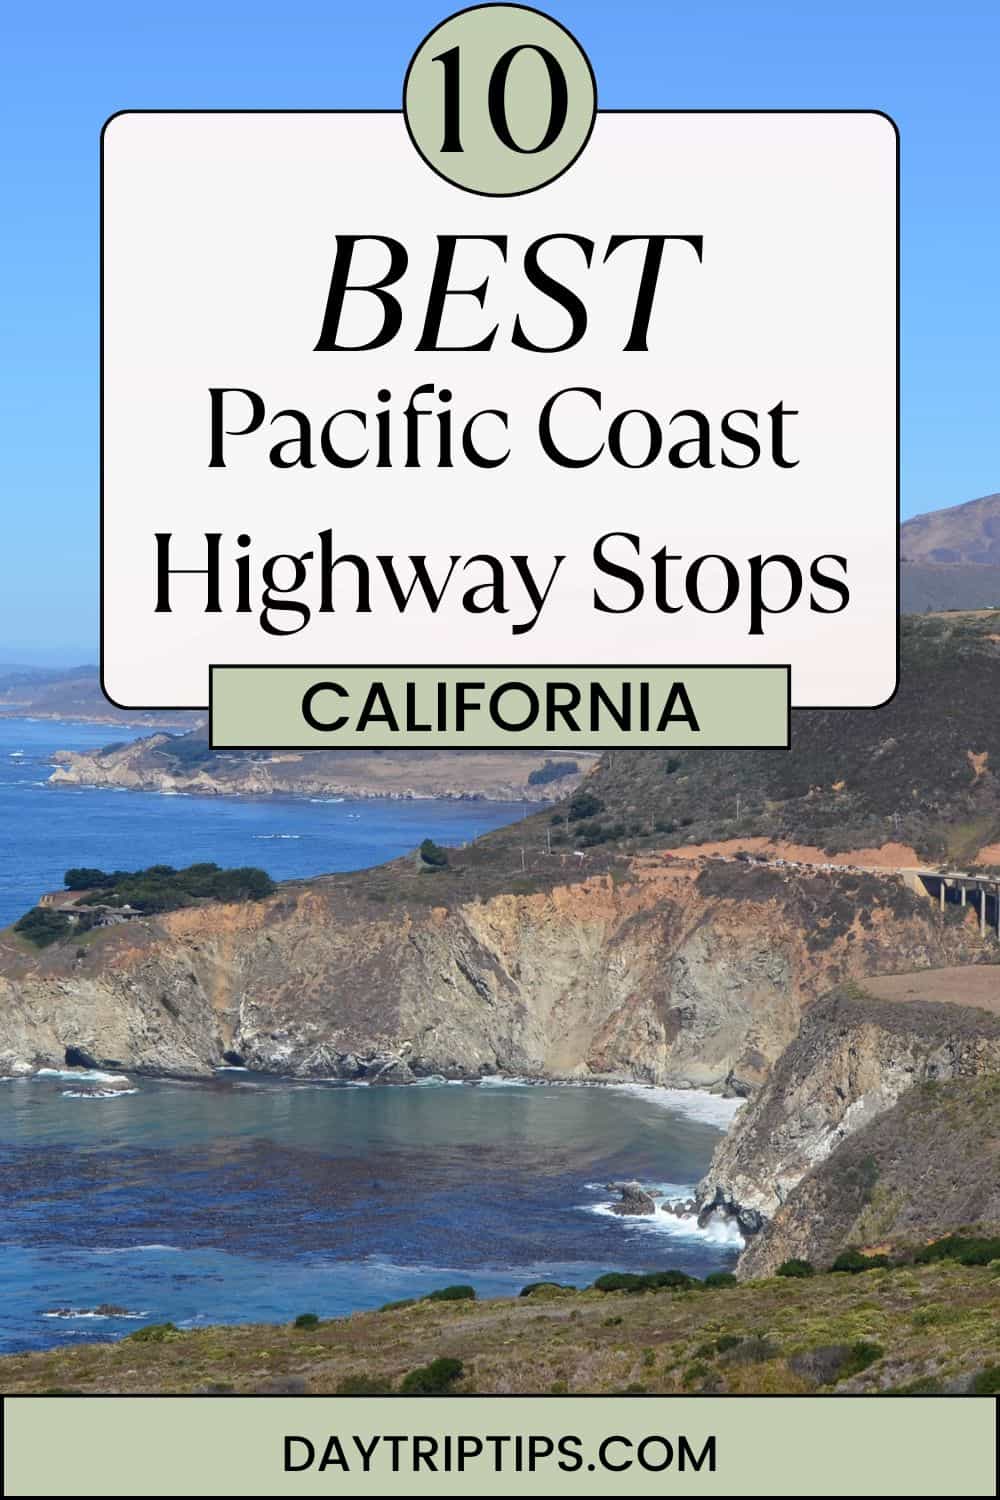 10 BEST Pacific Coast Highway Stops in California